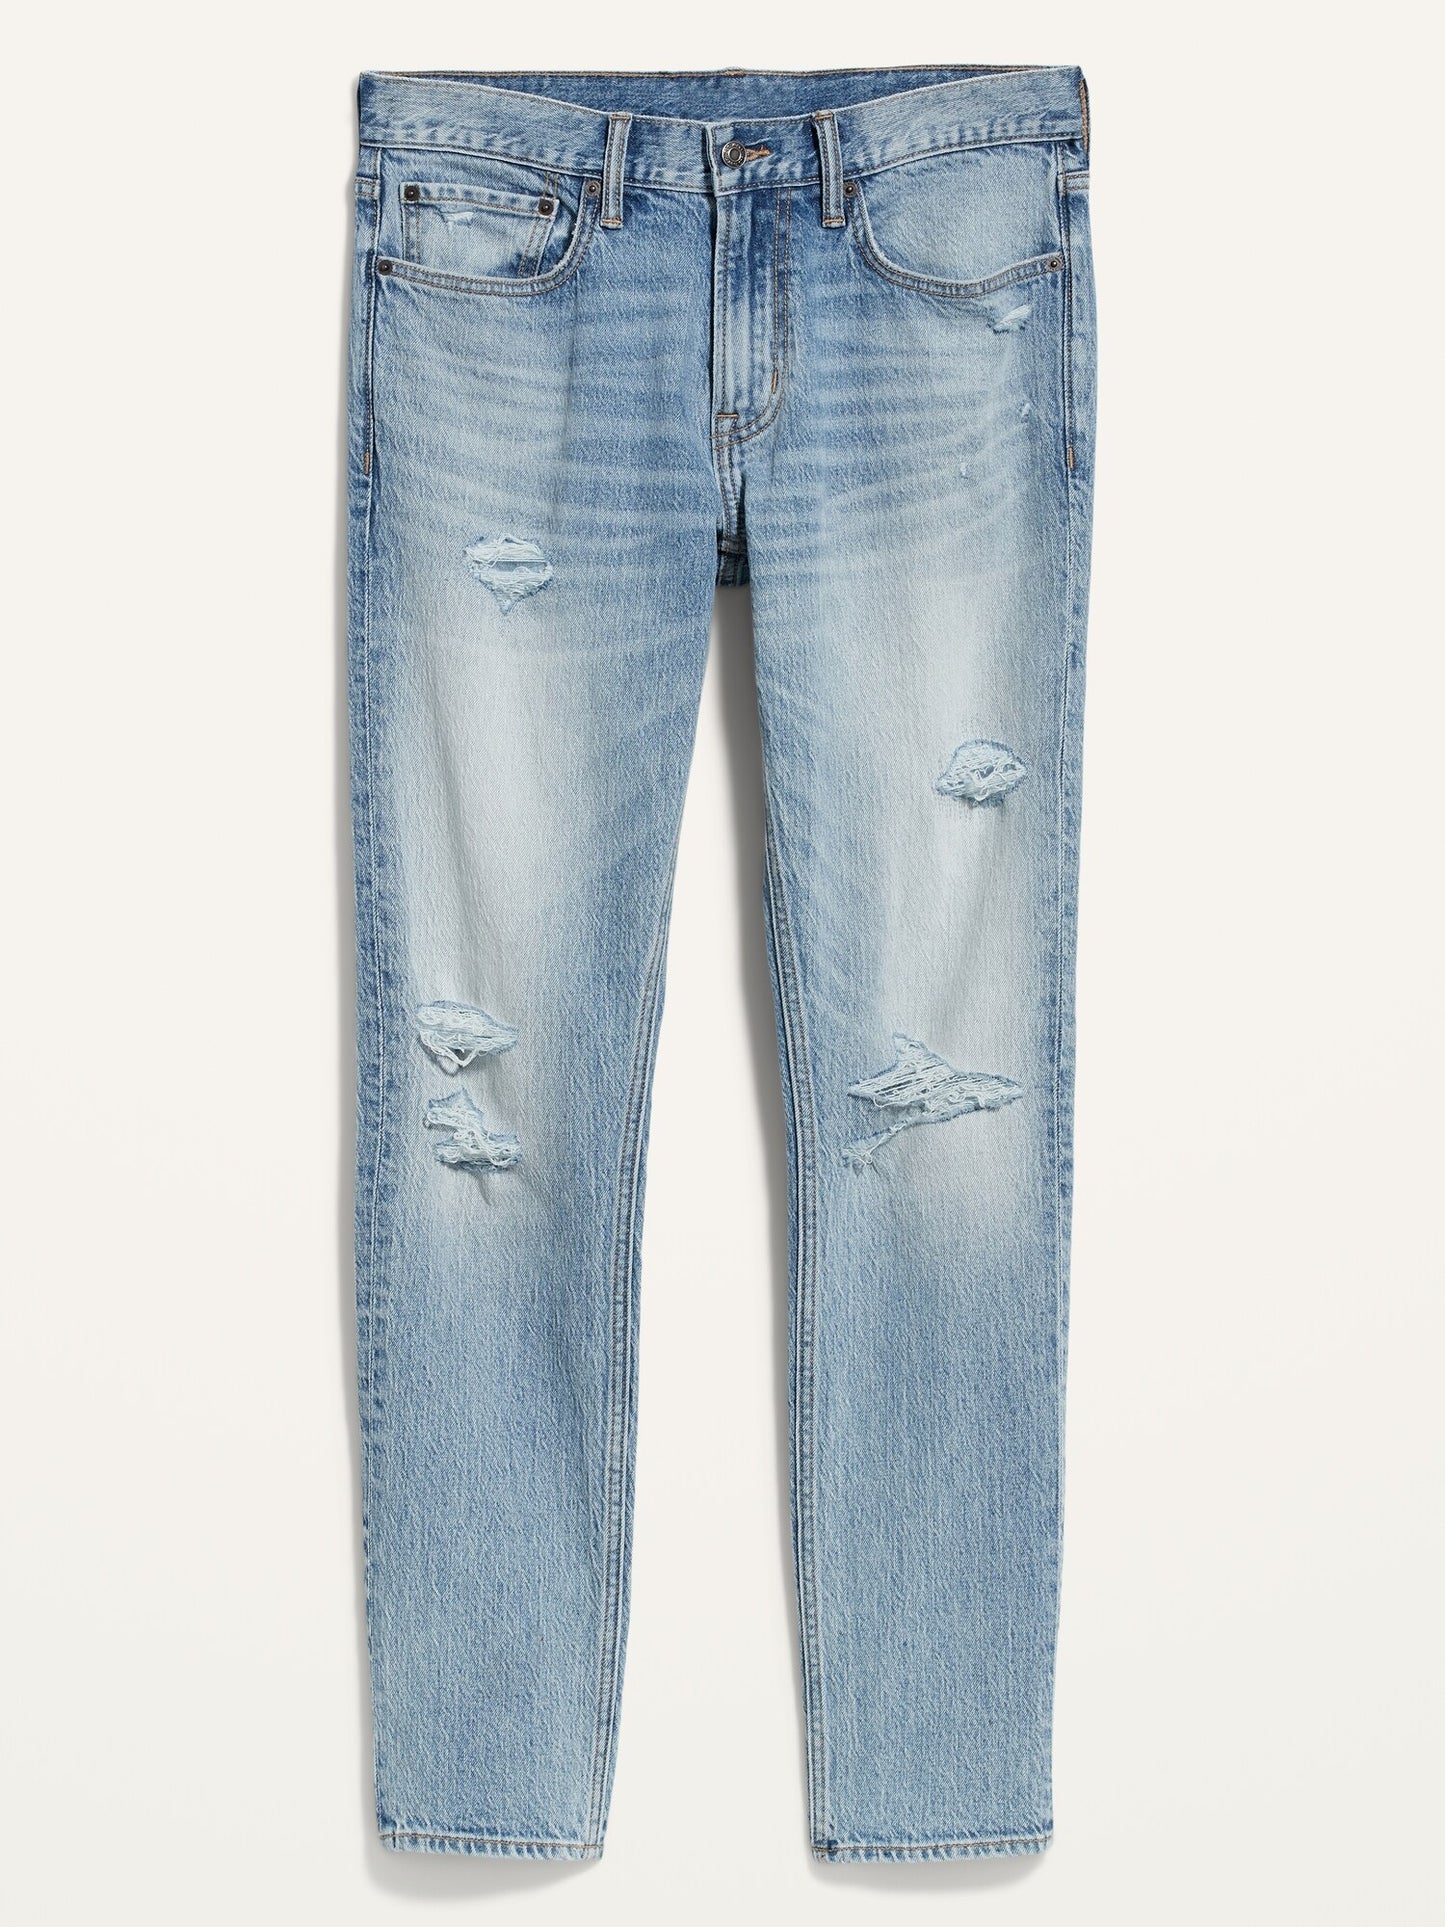 ON Skinny Built-In Flex Ripped Light-Wash Jeans For Men - Medium